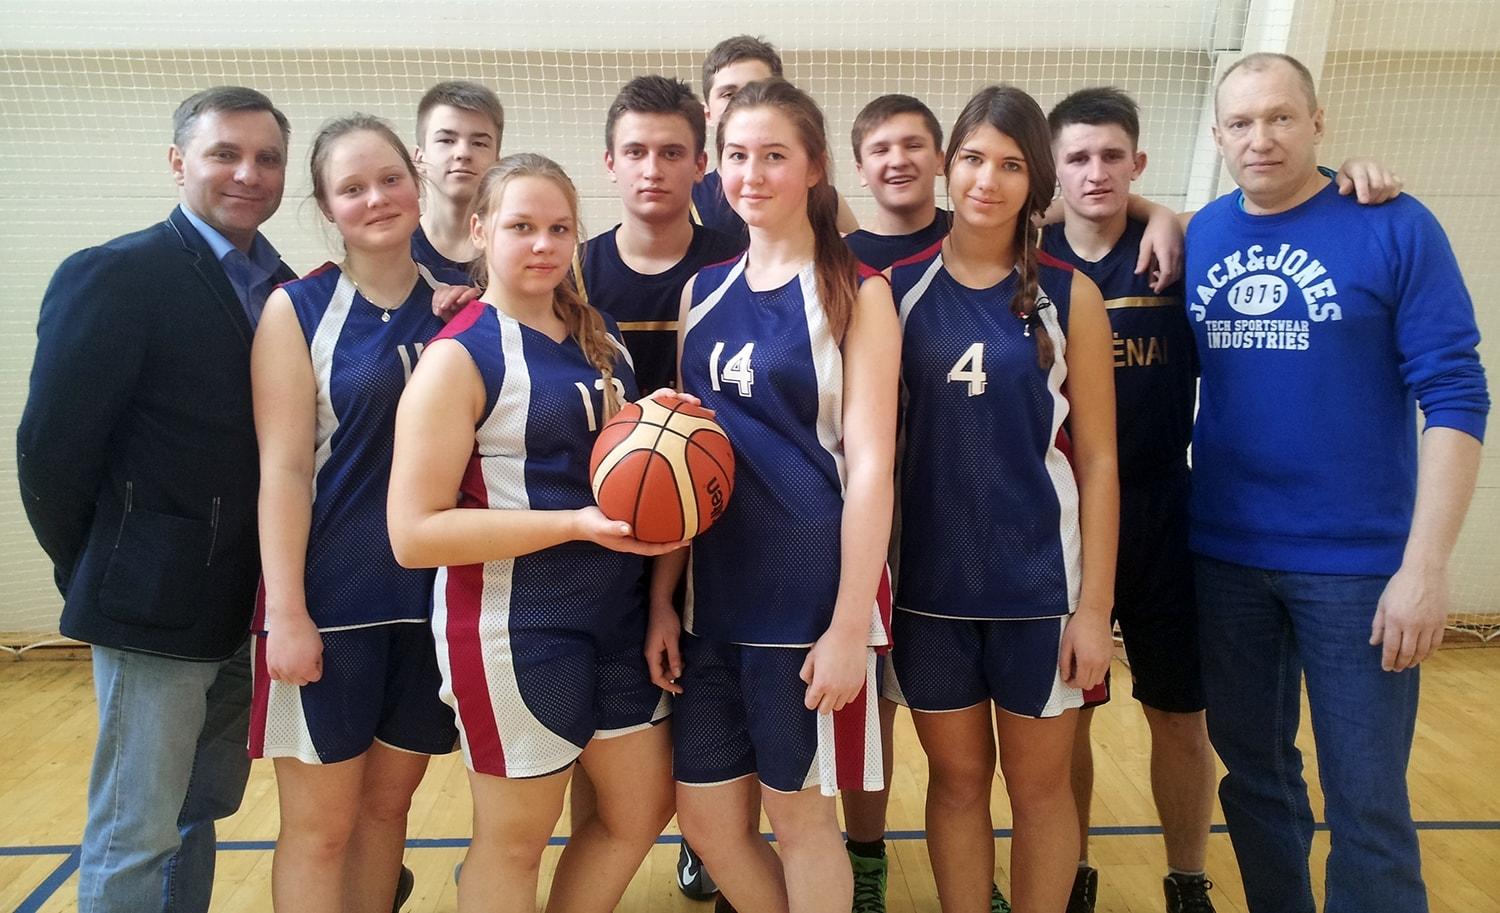 LMŽ kai­mo vie­to­vių mo­ki­nių zo­ni­nės 3x3 krep­ši­nio var­žy­bos / Taujėnų gimnazijos komandos.